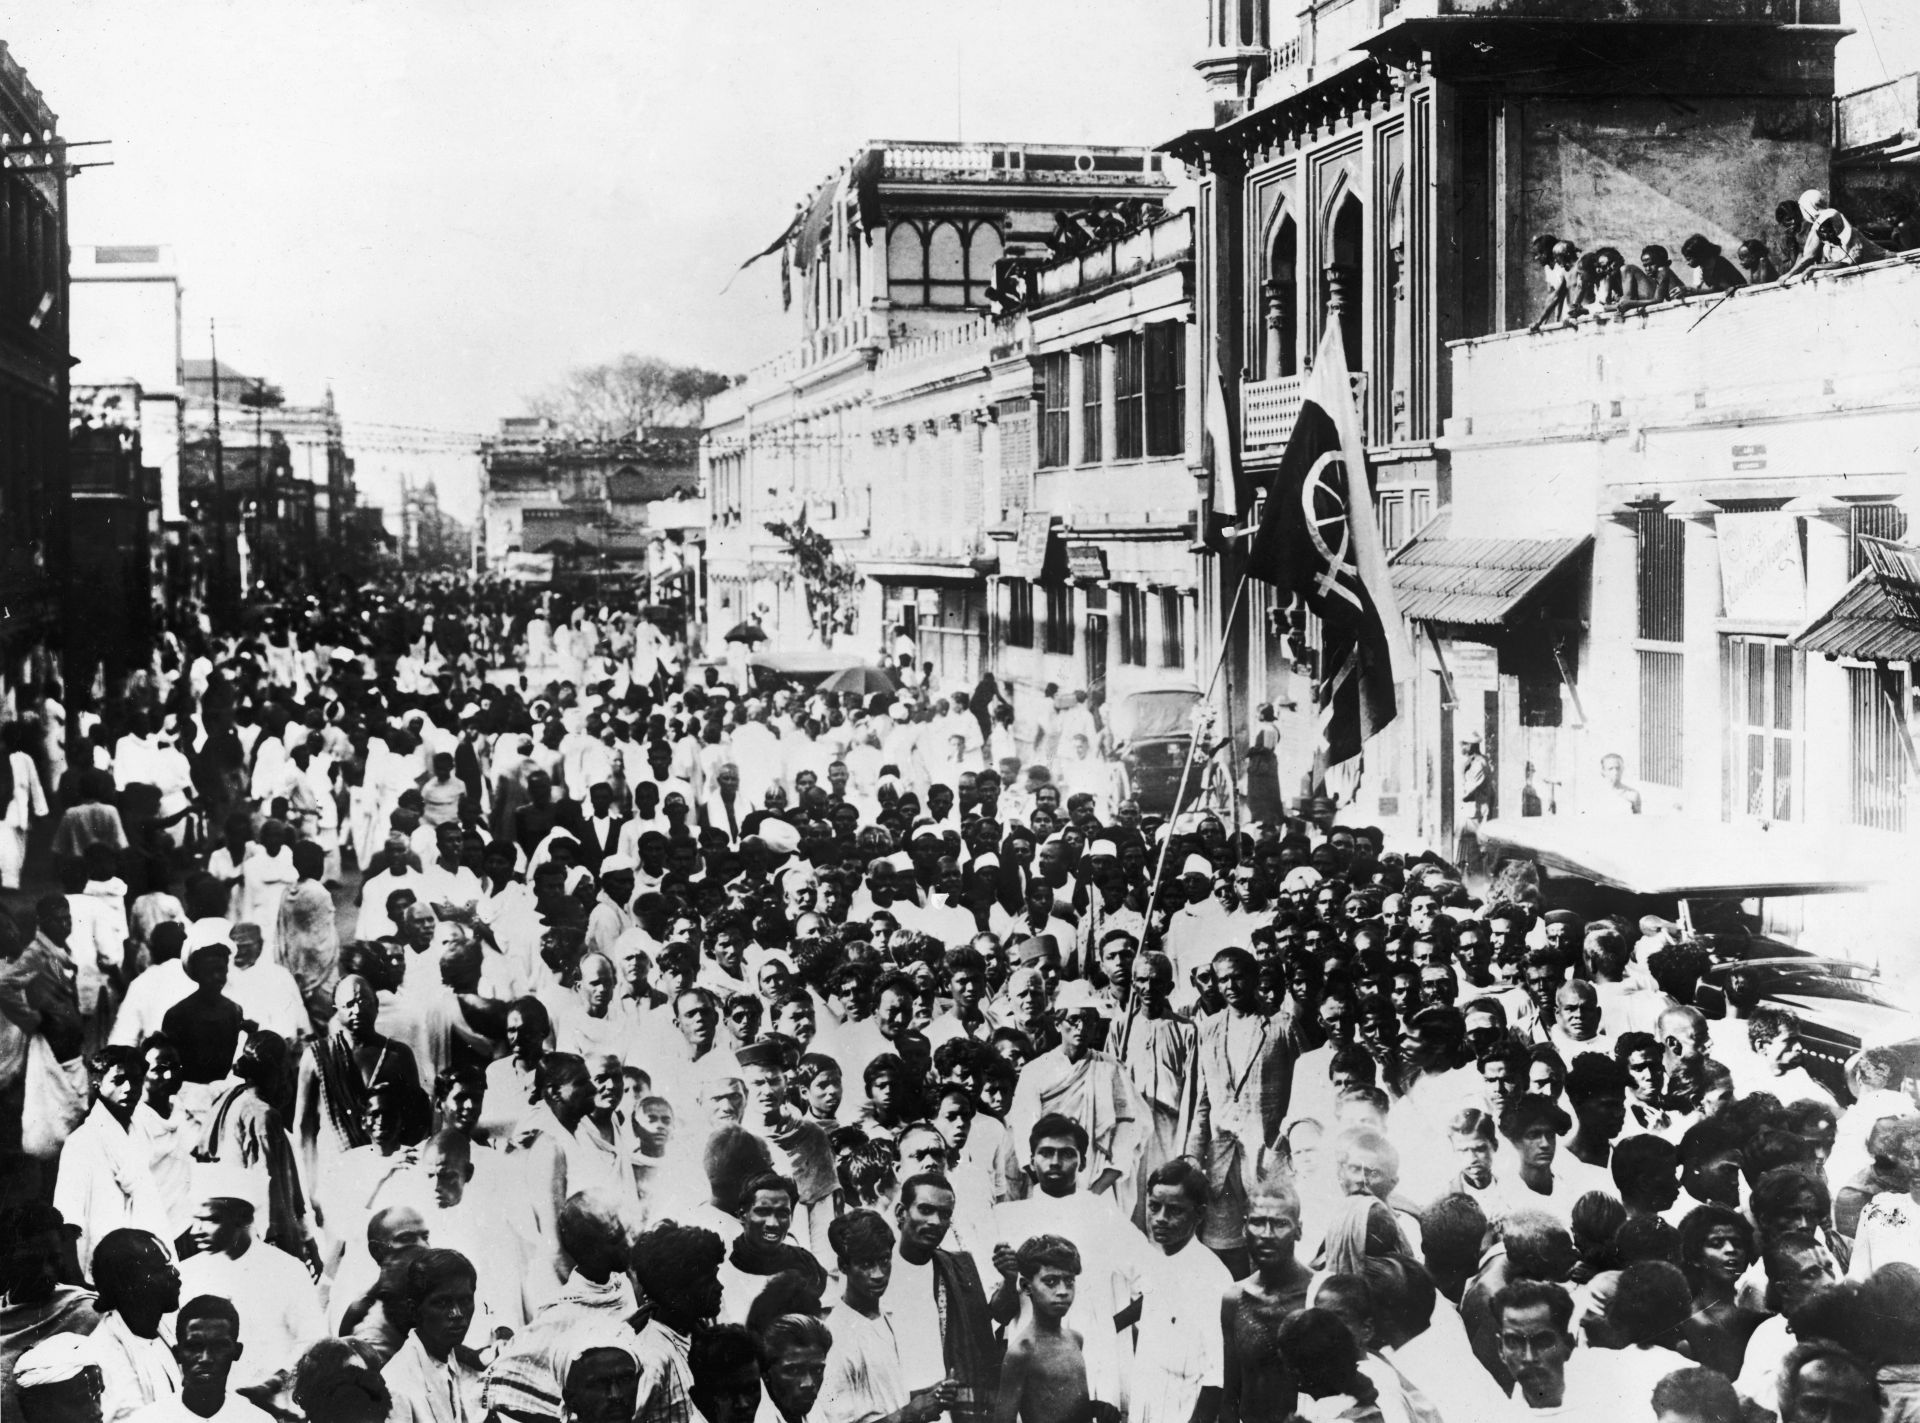  Национални доброволци, привърженици на Махатма Ганди, маршируват по улиците на Мадрас, 1930 г